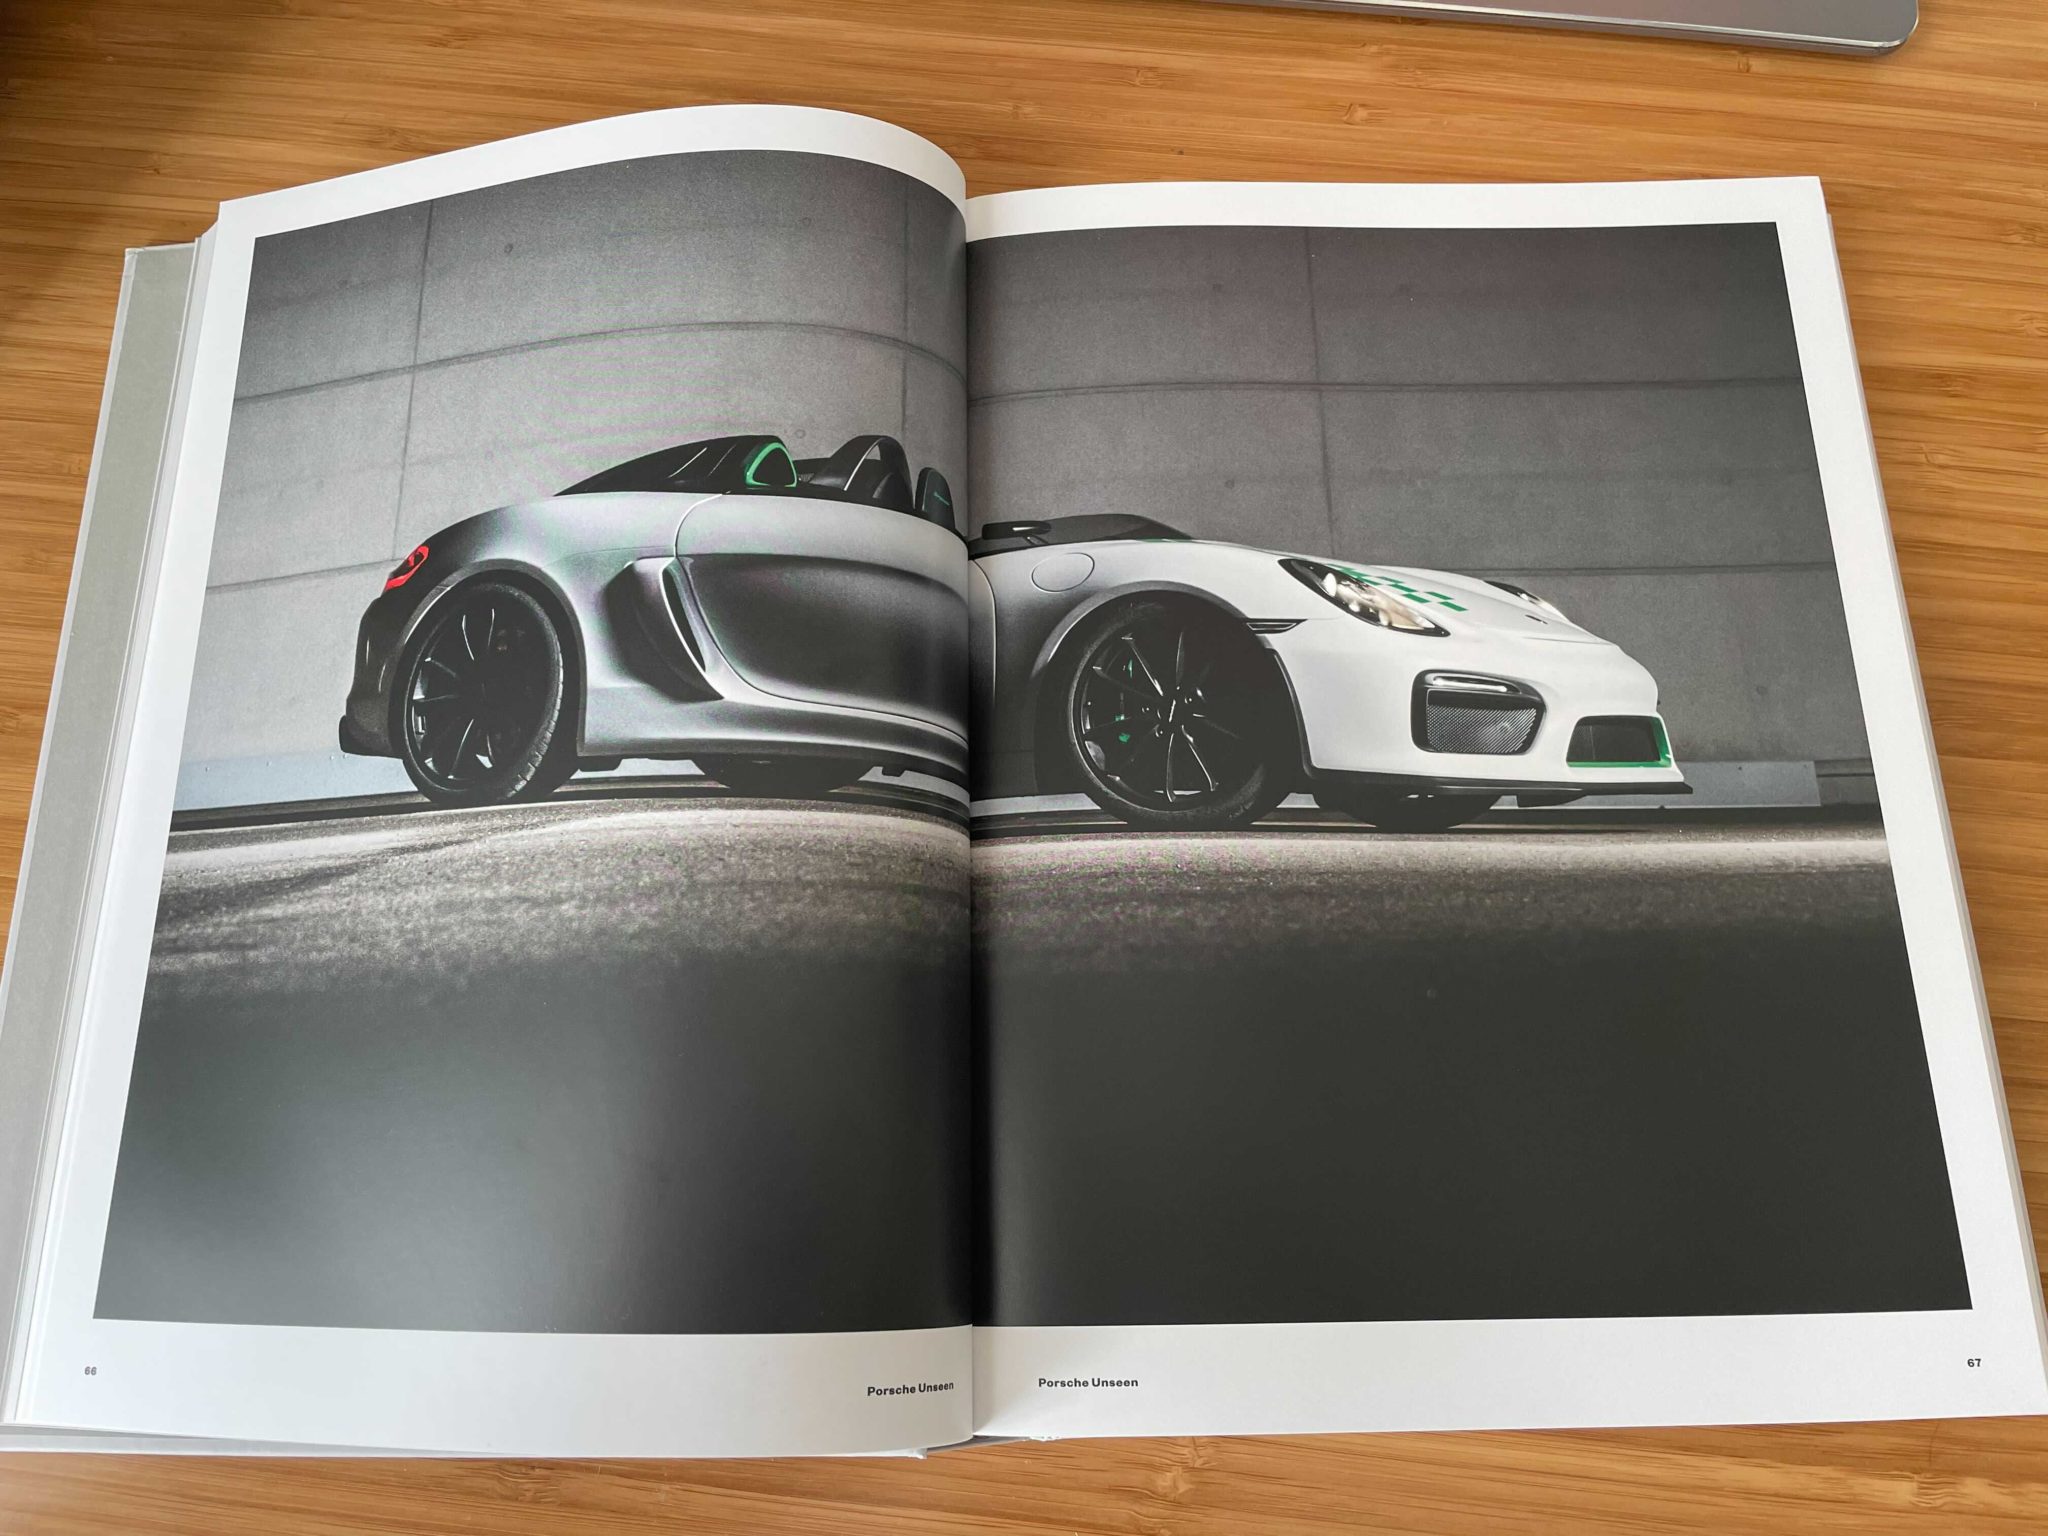 'Porsche Unseen' Is A Rare Look Inside Porsche's Design Studio | FLATSIXES